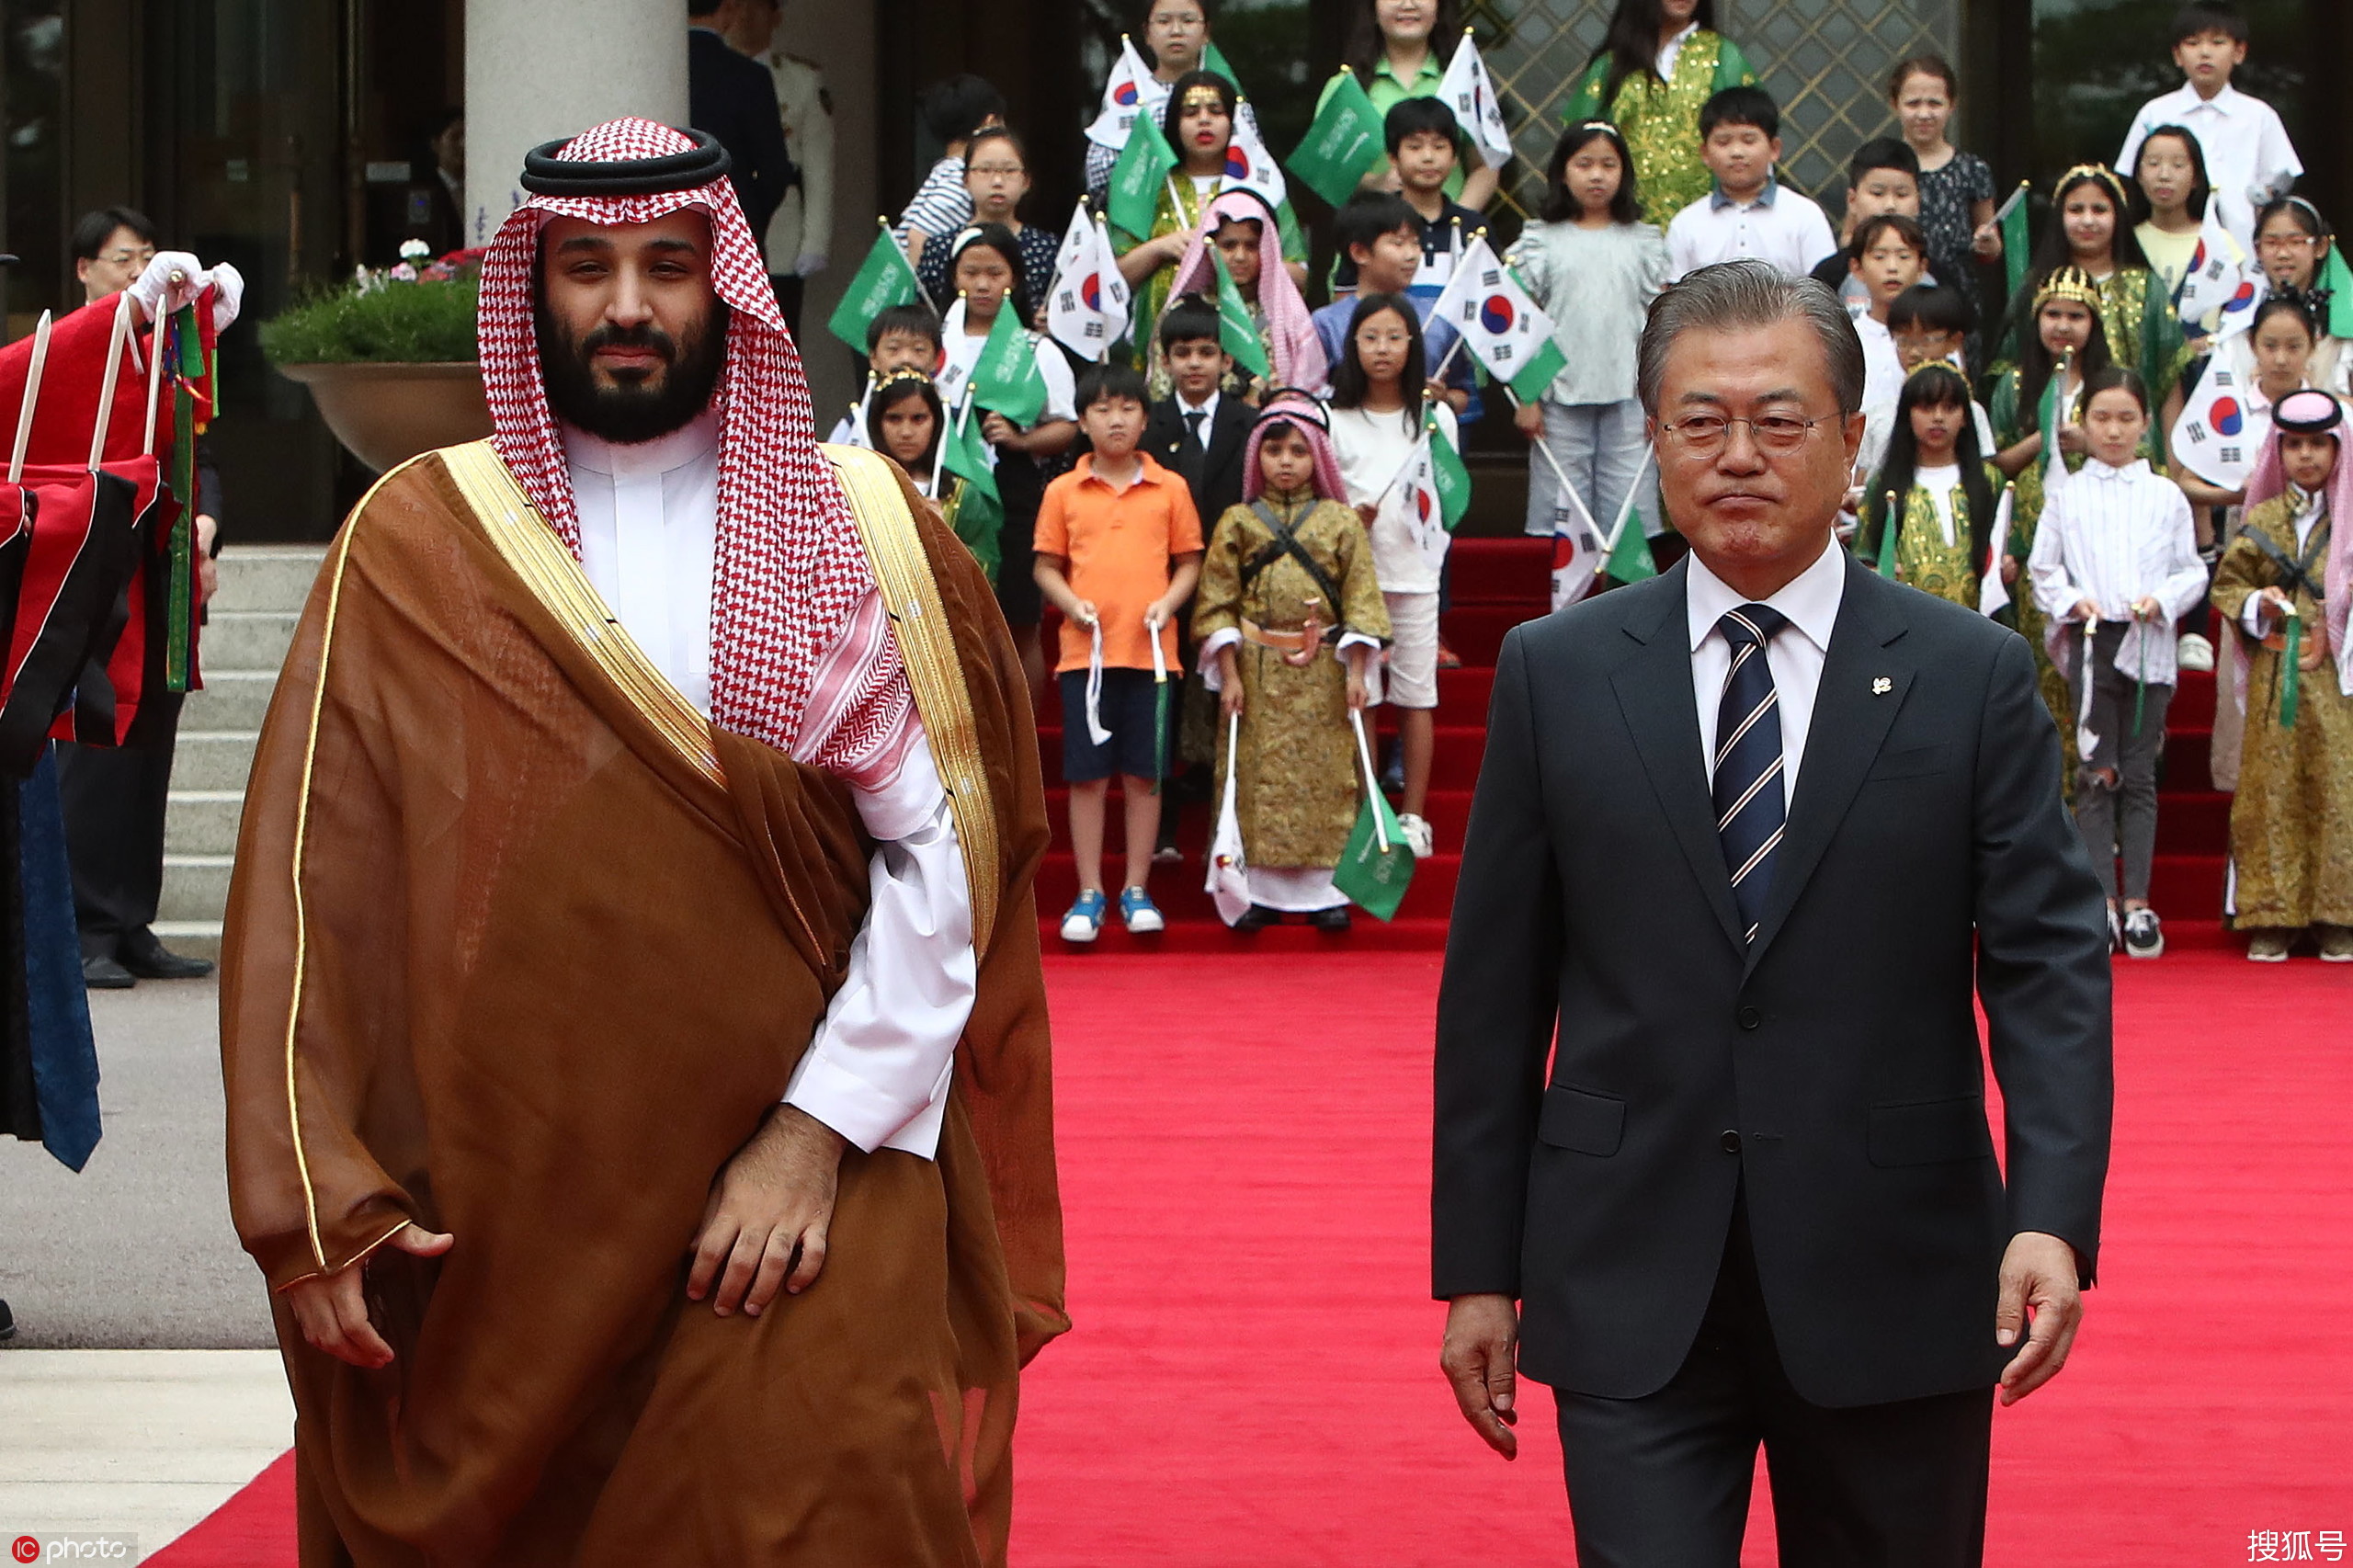 当地时间2019年6月26日,韩国首尔,韩国总统文在寅为到访的沙特阿拉伯